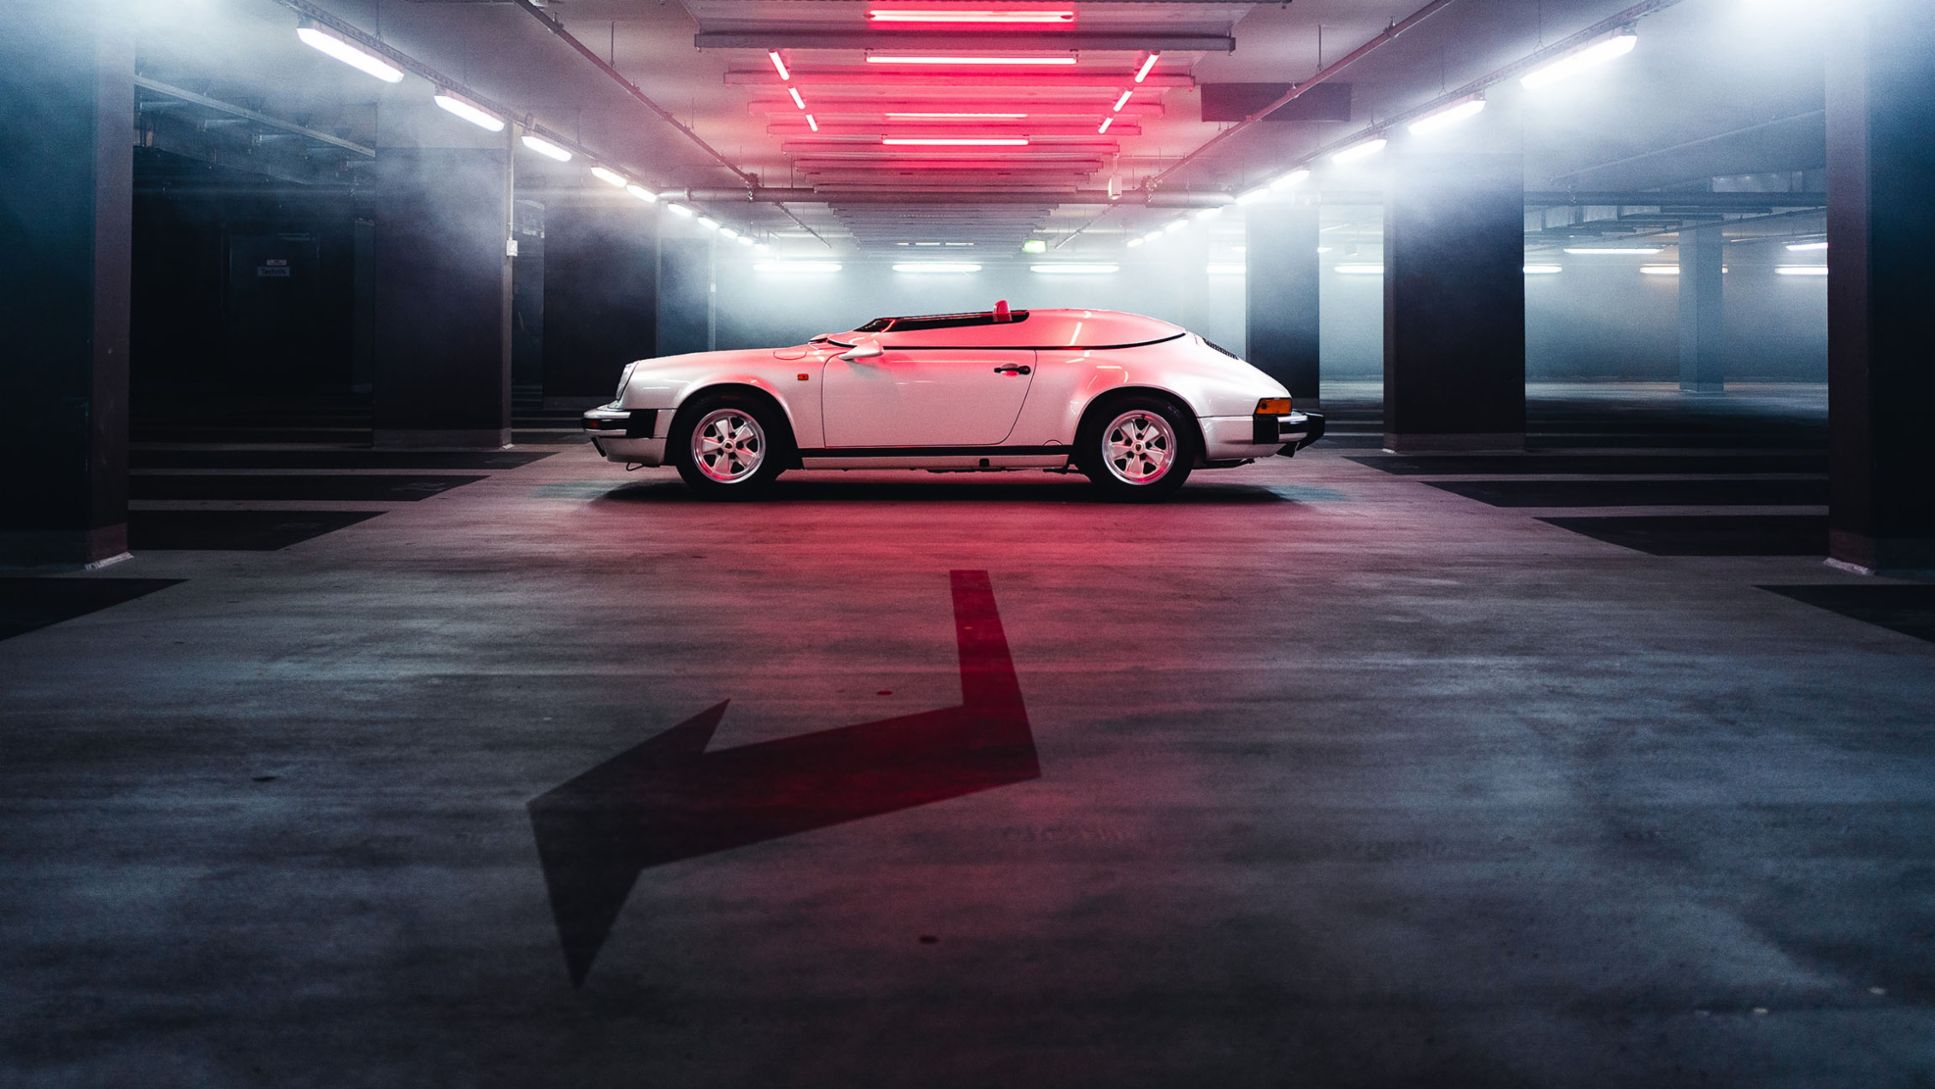 911 Carrera 3.2 Speedster, Prototyp, 2018, Porsche AG